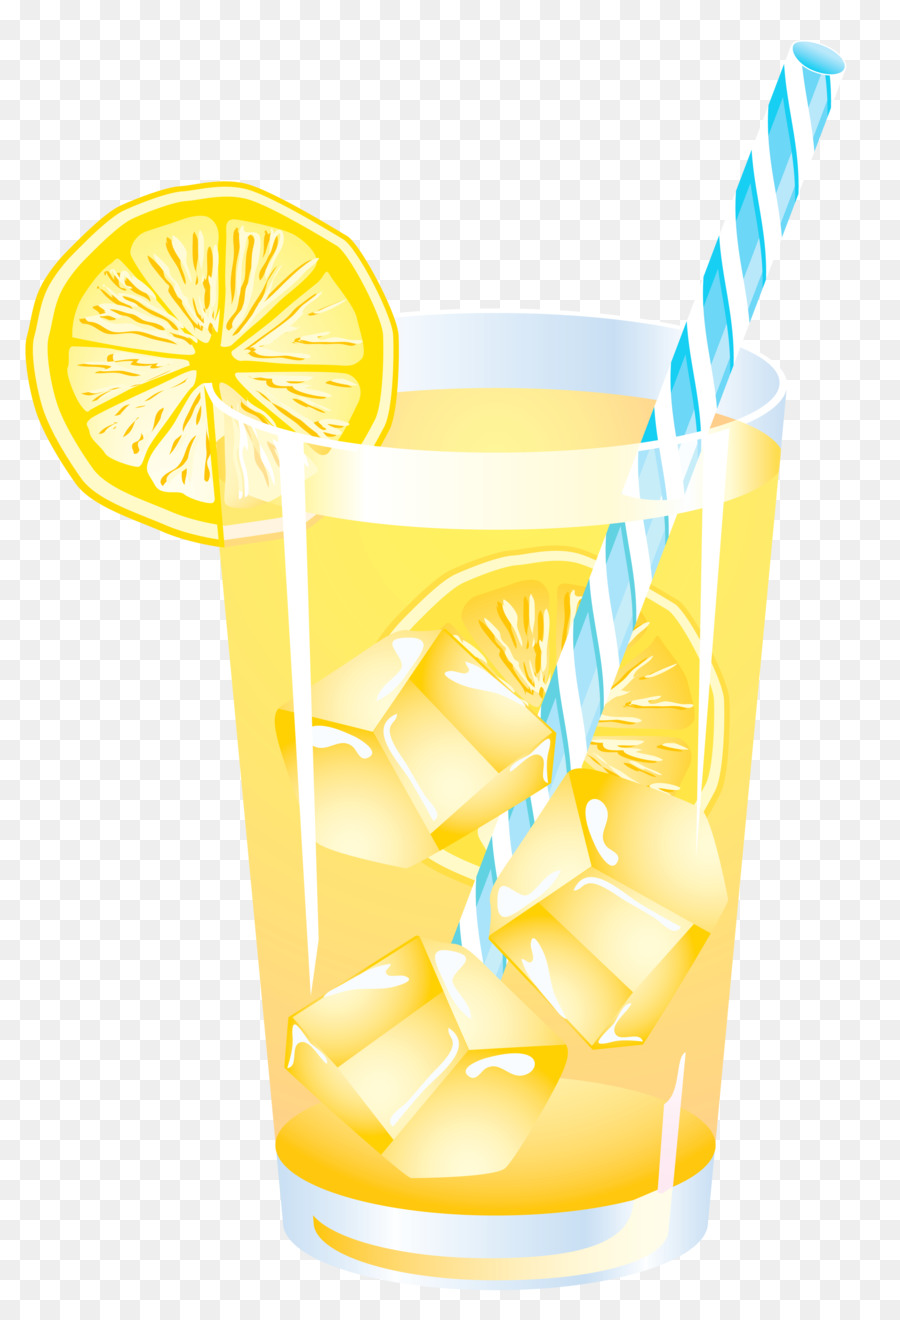 Lemon Juice clipart